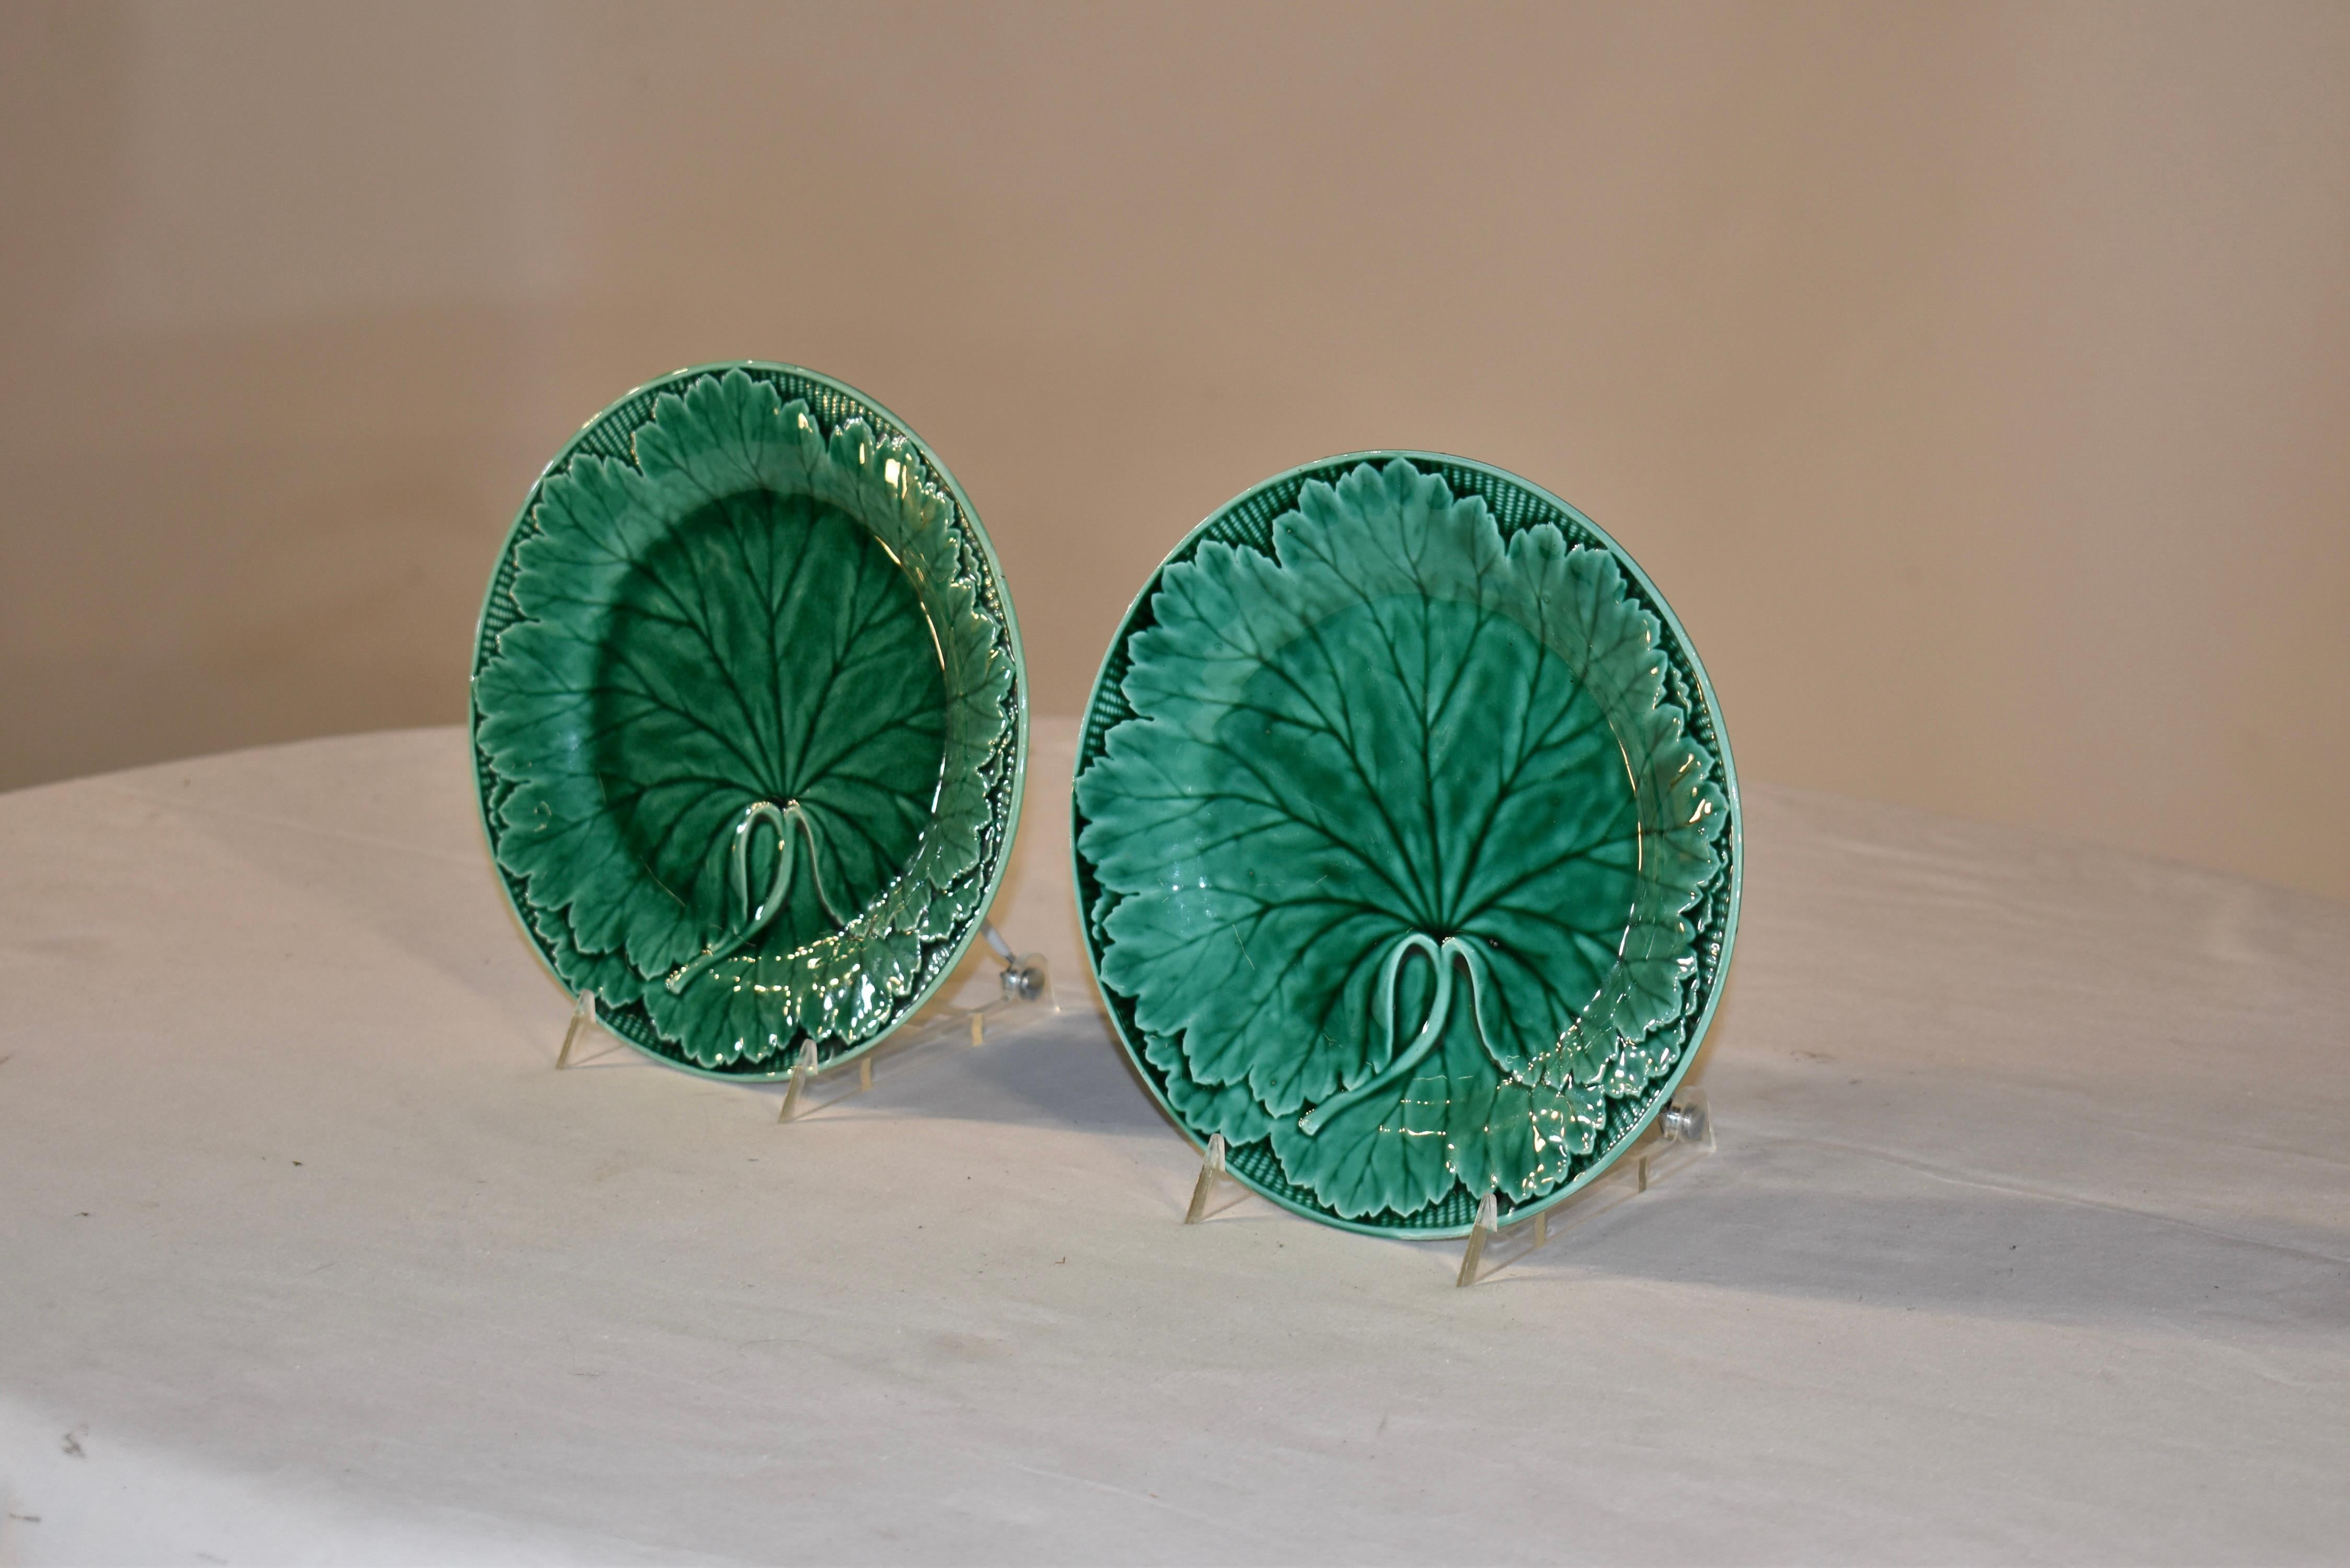 Paire d'assiettes en majolique de Wedgwood du 19e siècle aux riches nuances de vert. Les moules sont nets et présentent de nombreux détails dans les feuilles et le motif de vannerie qui les entoure. Les pièces portent la marque imprimée WEDGWOOD au